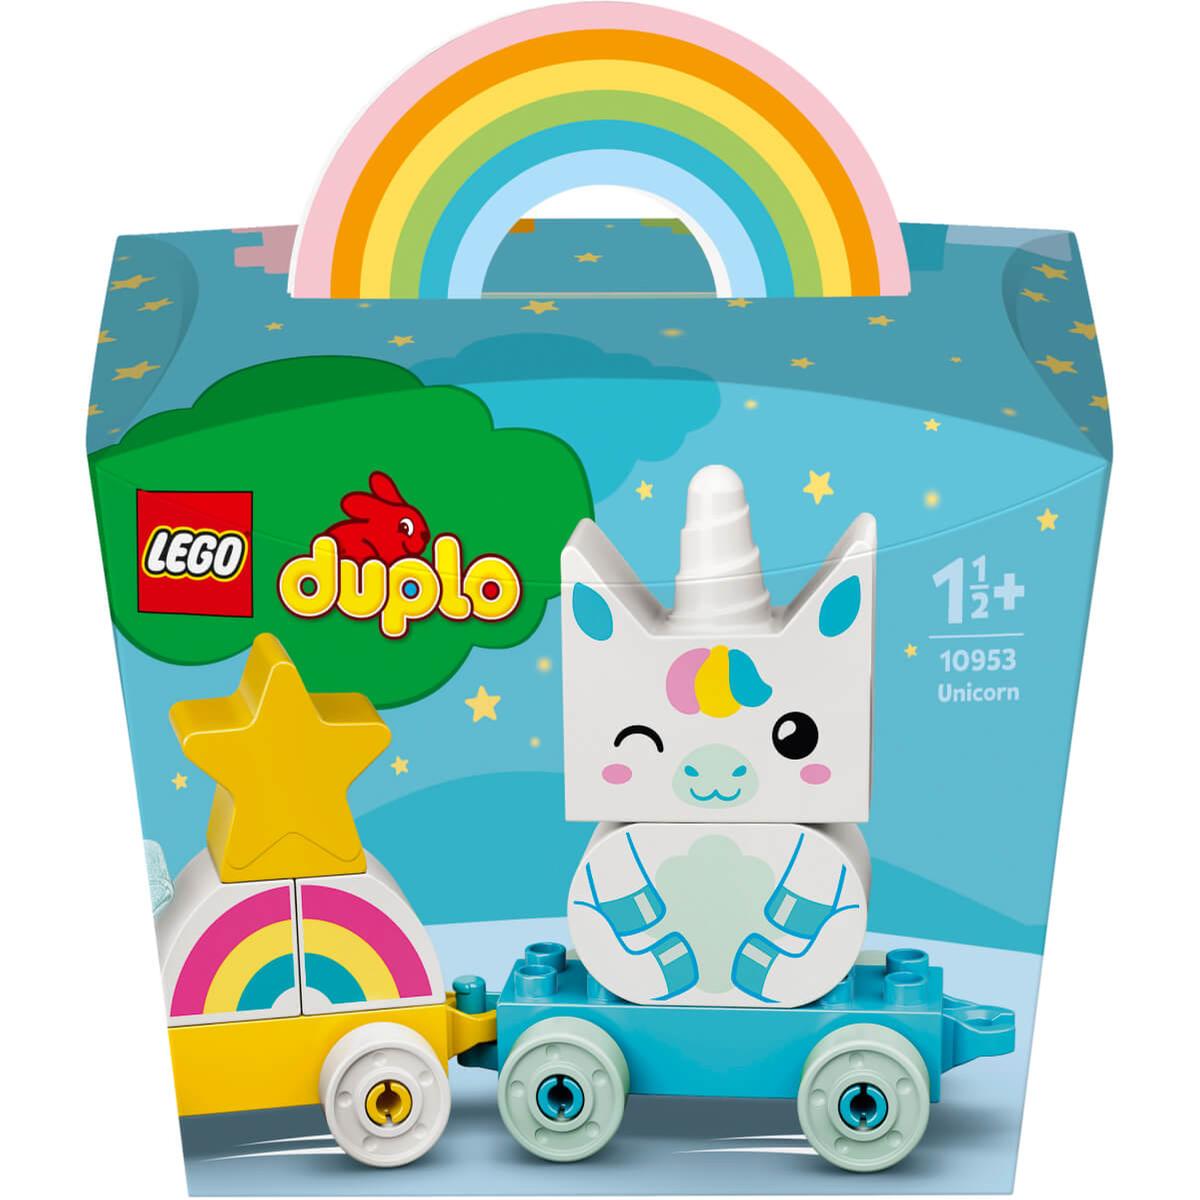 LEGO DUPLO - Unicornio - 10953 | LEGO | Toys"R"Us España